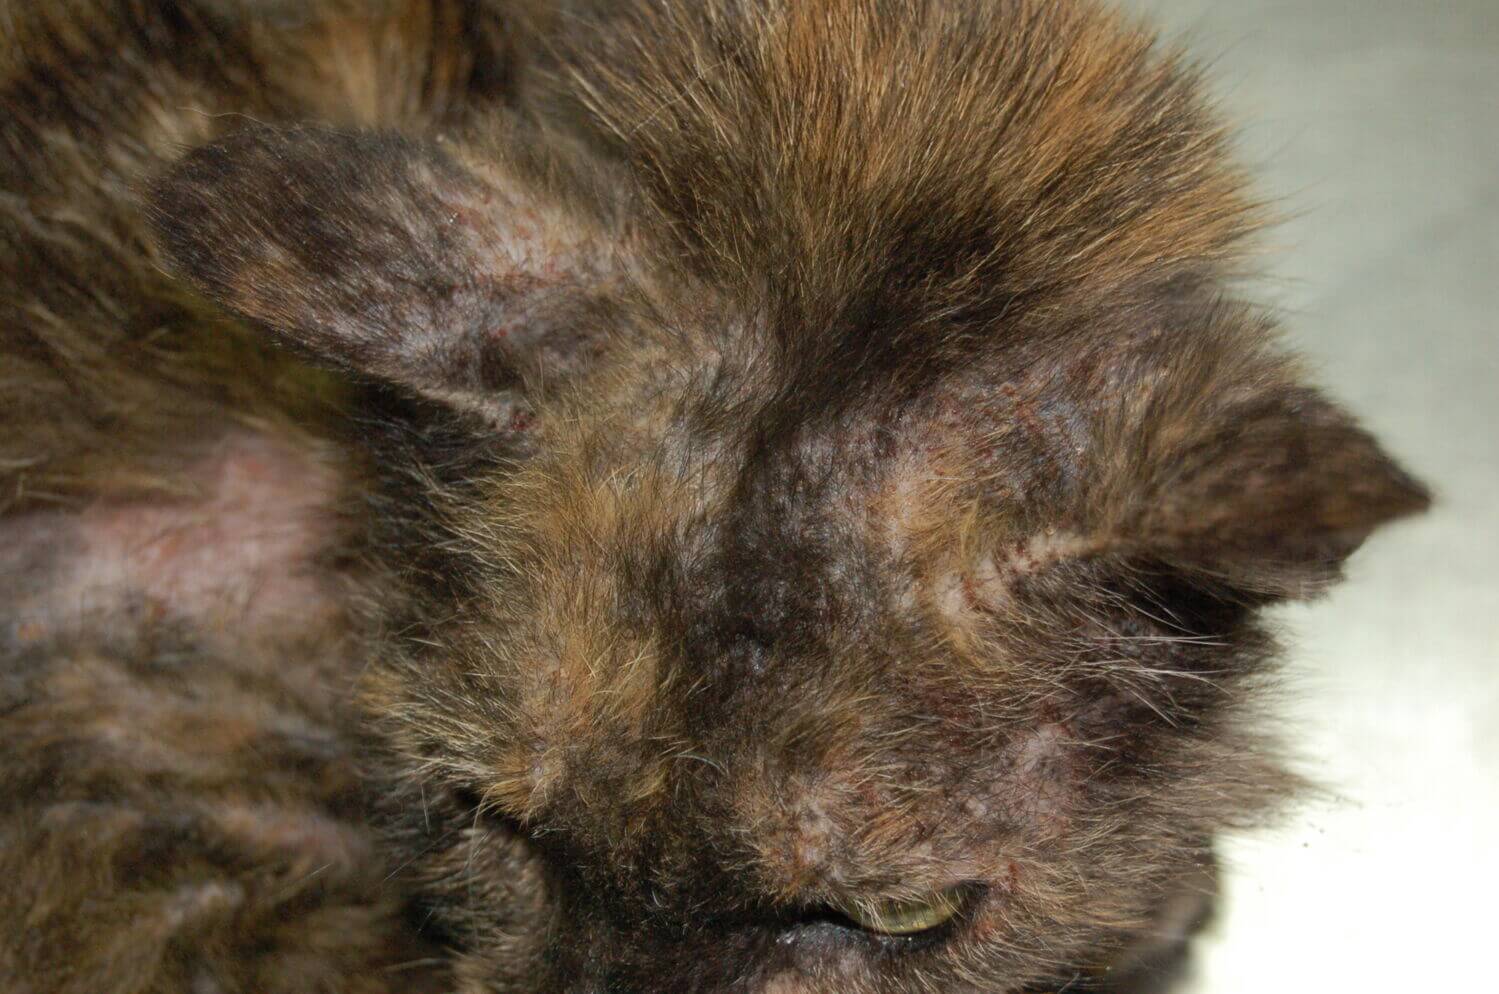 Malassezia macskában- bőrfertőzések